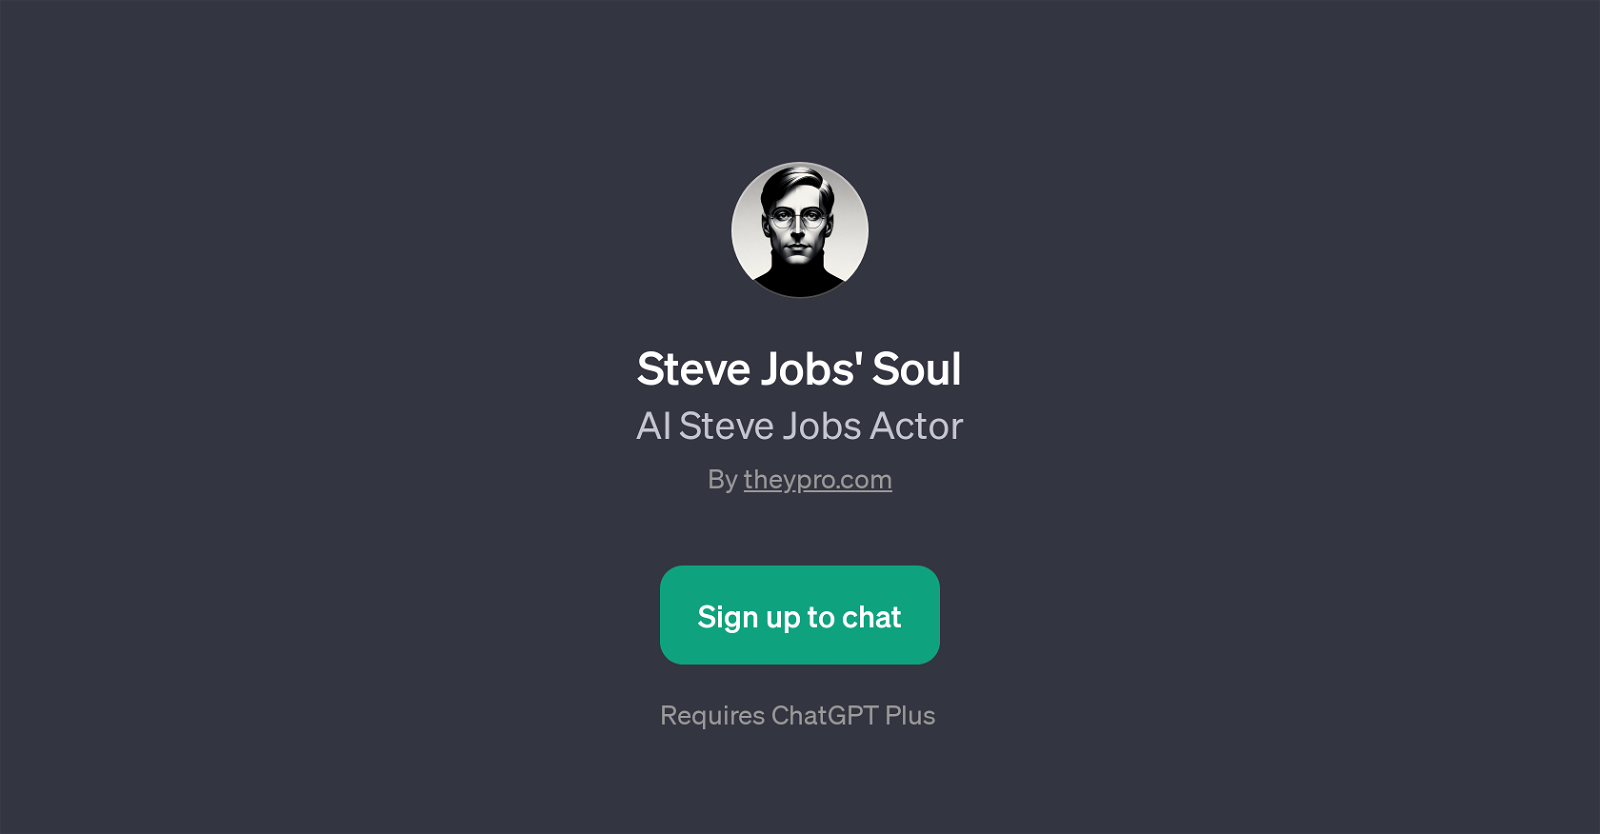 Steve Jobs' Soul website